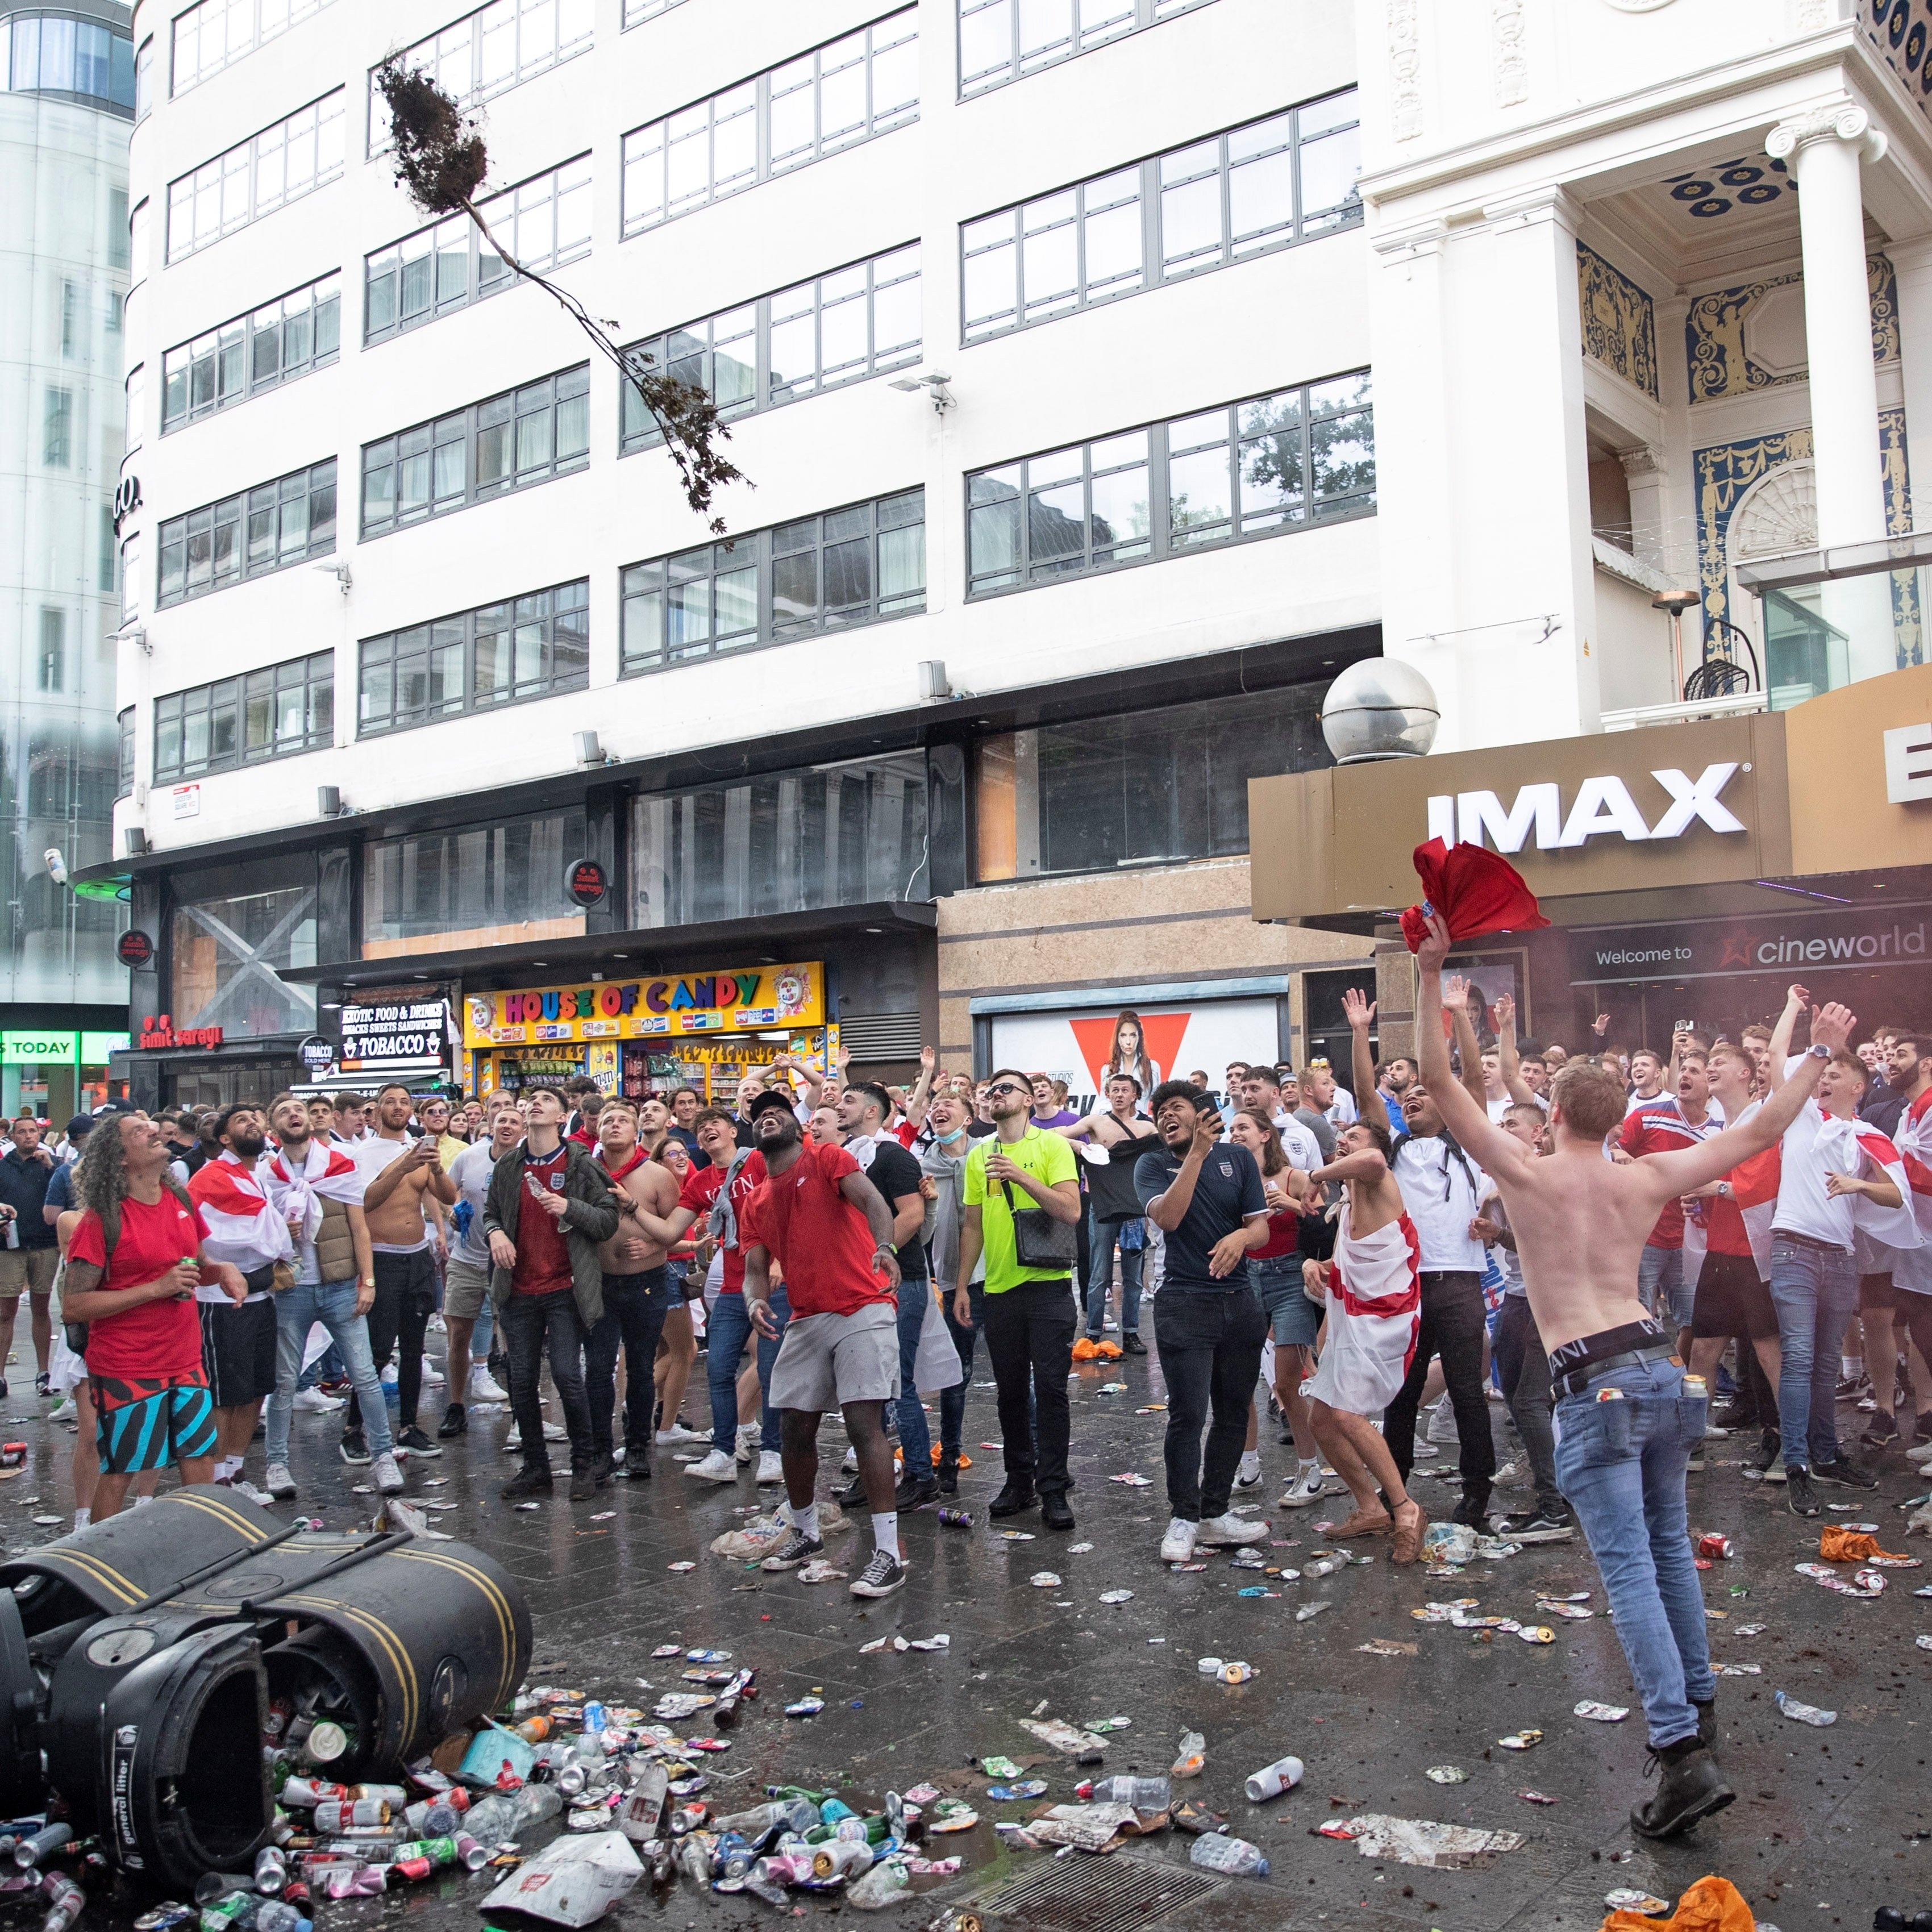 Caos i vergonya a Londres abans de la final de l'Eurocopa